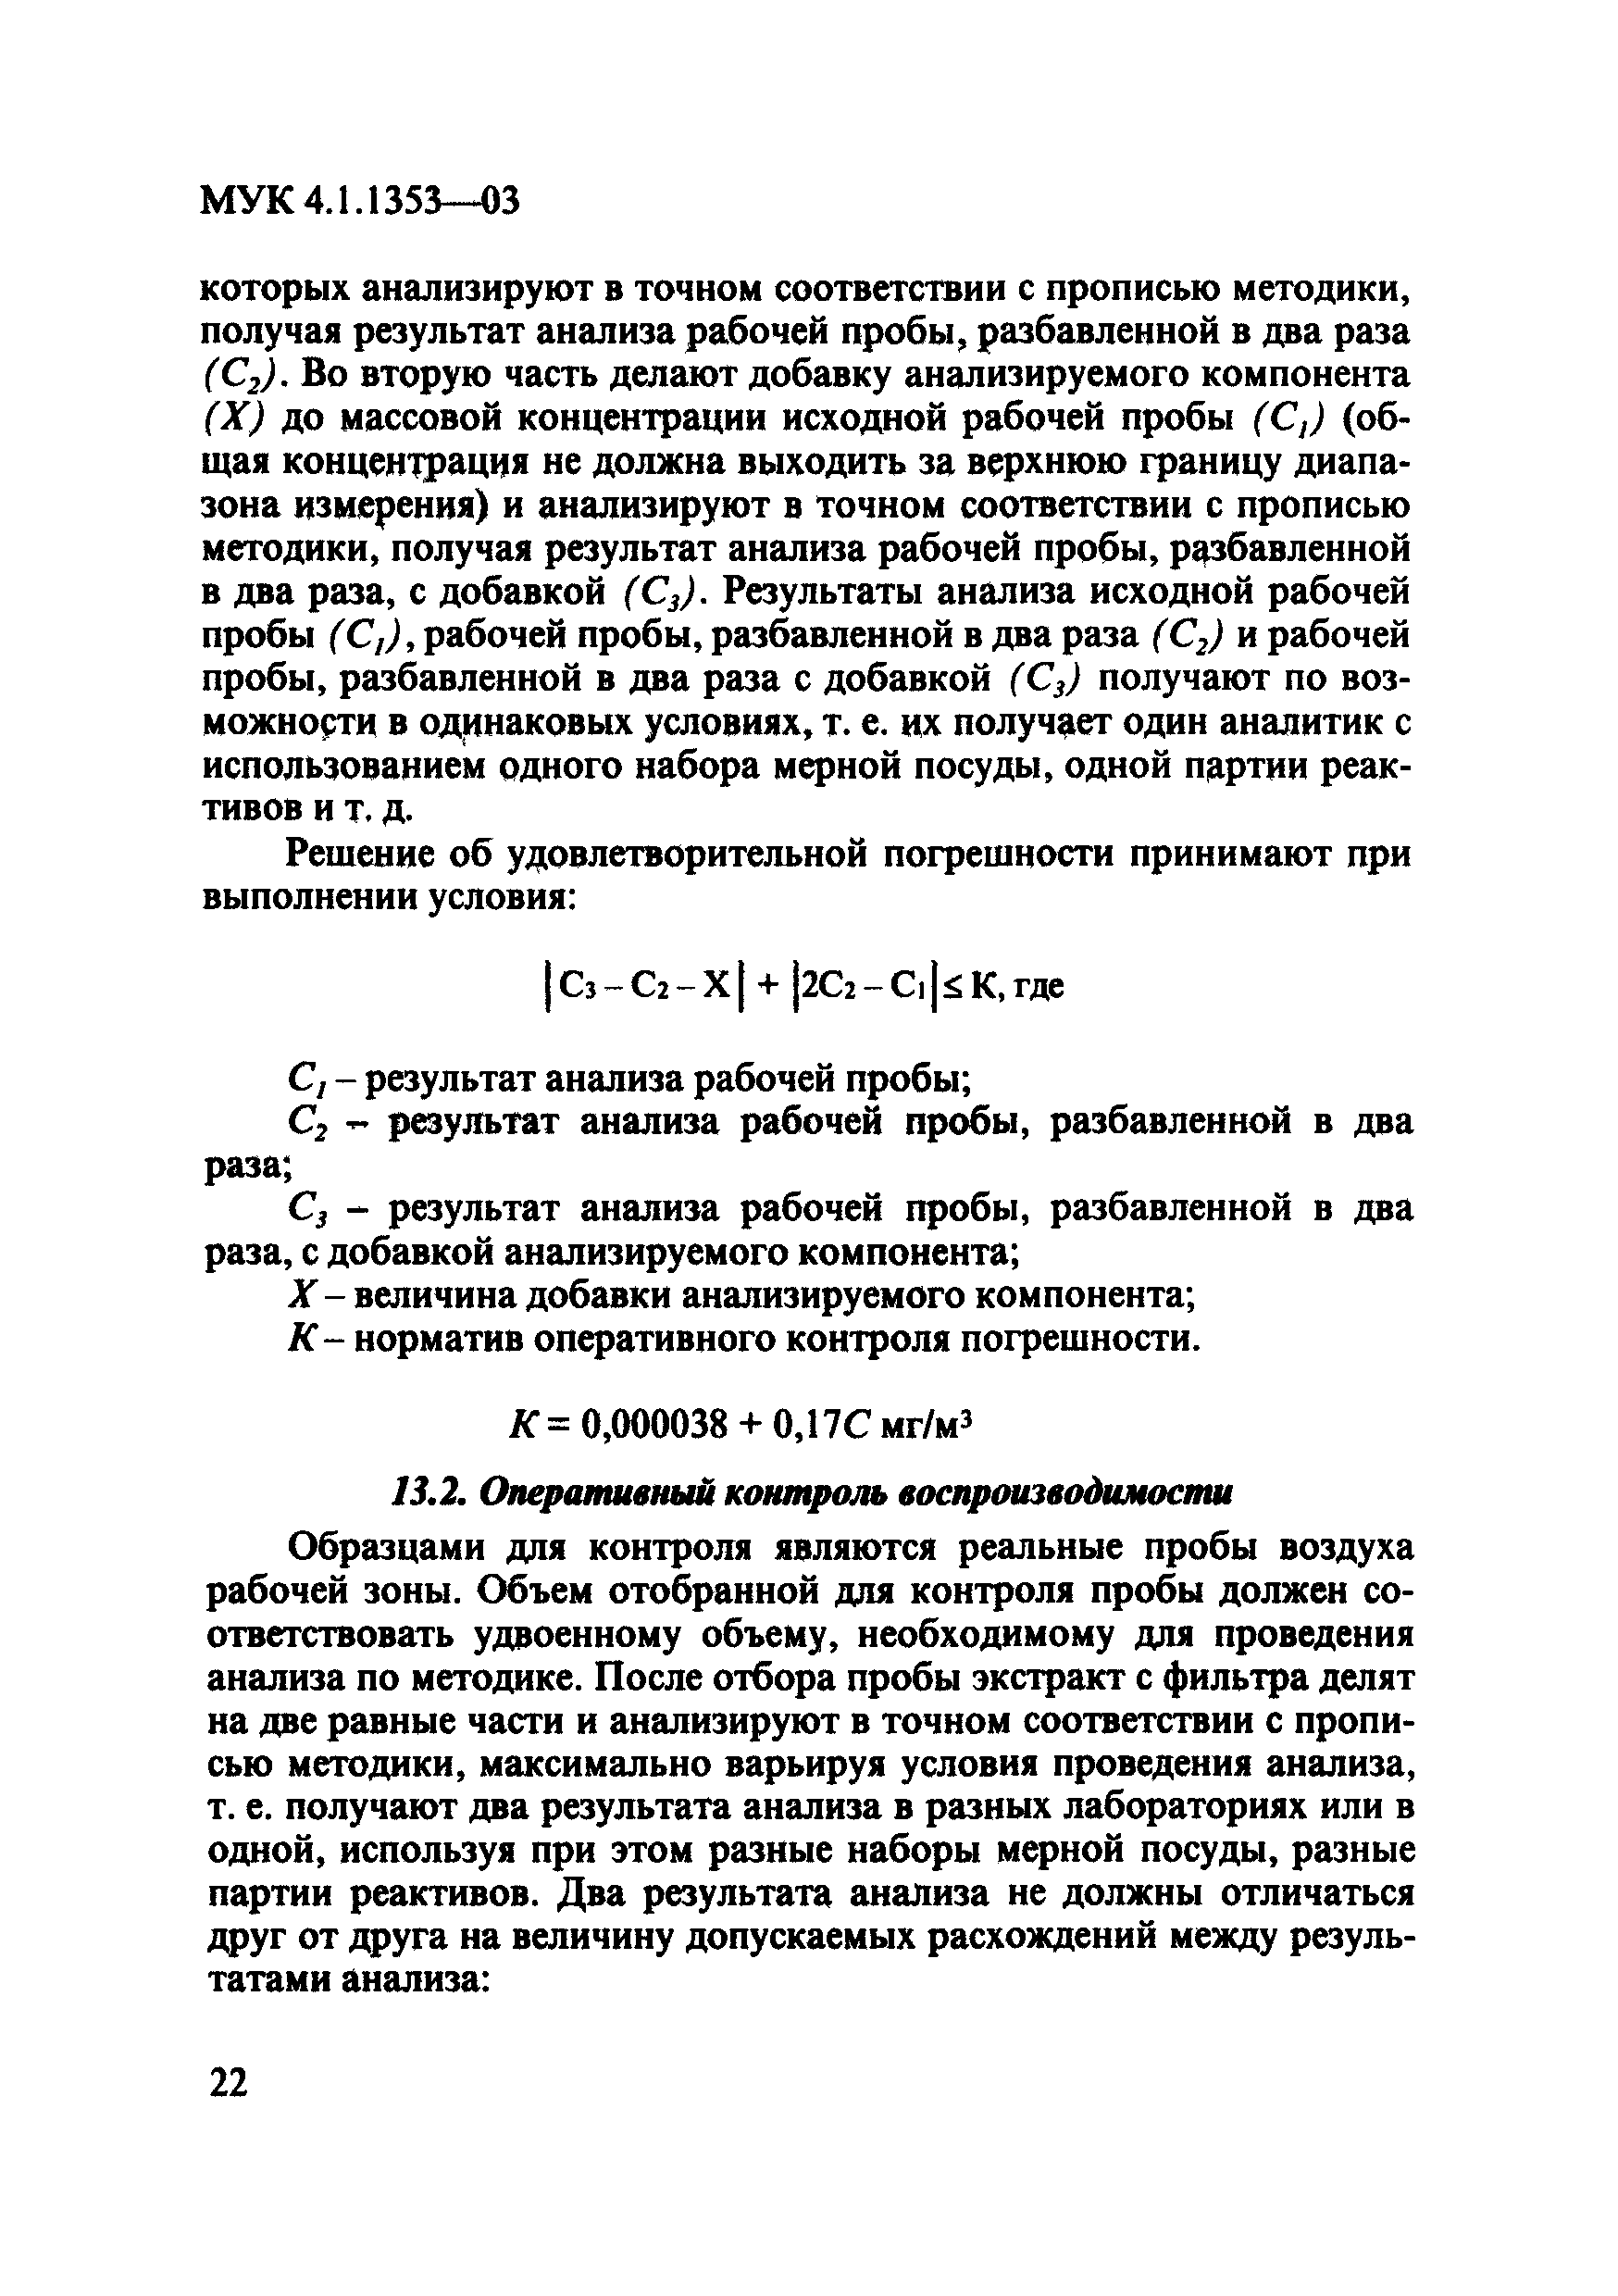 МУК 4.1.1353-03